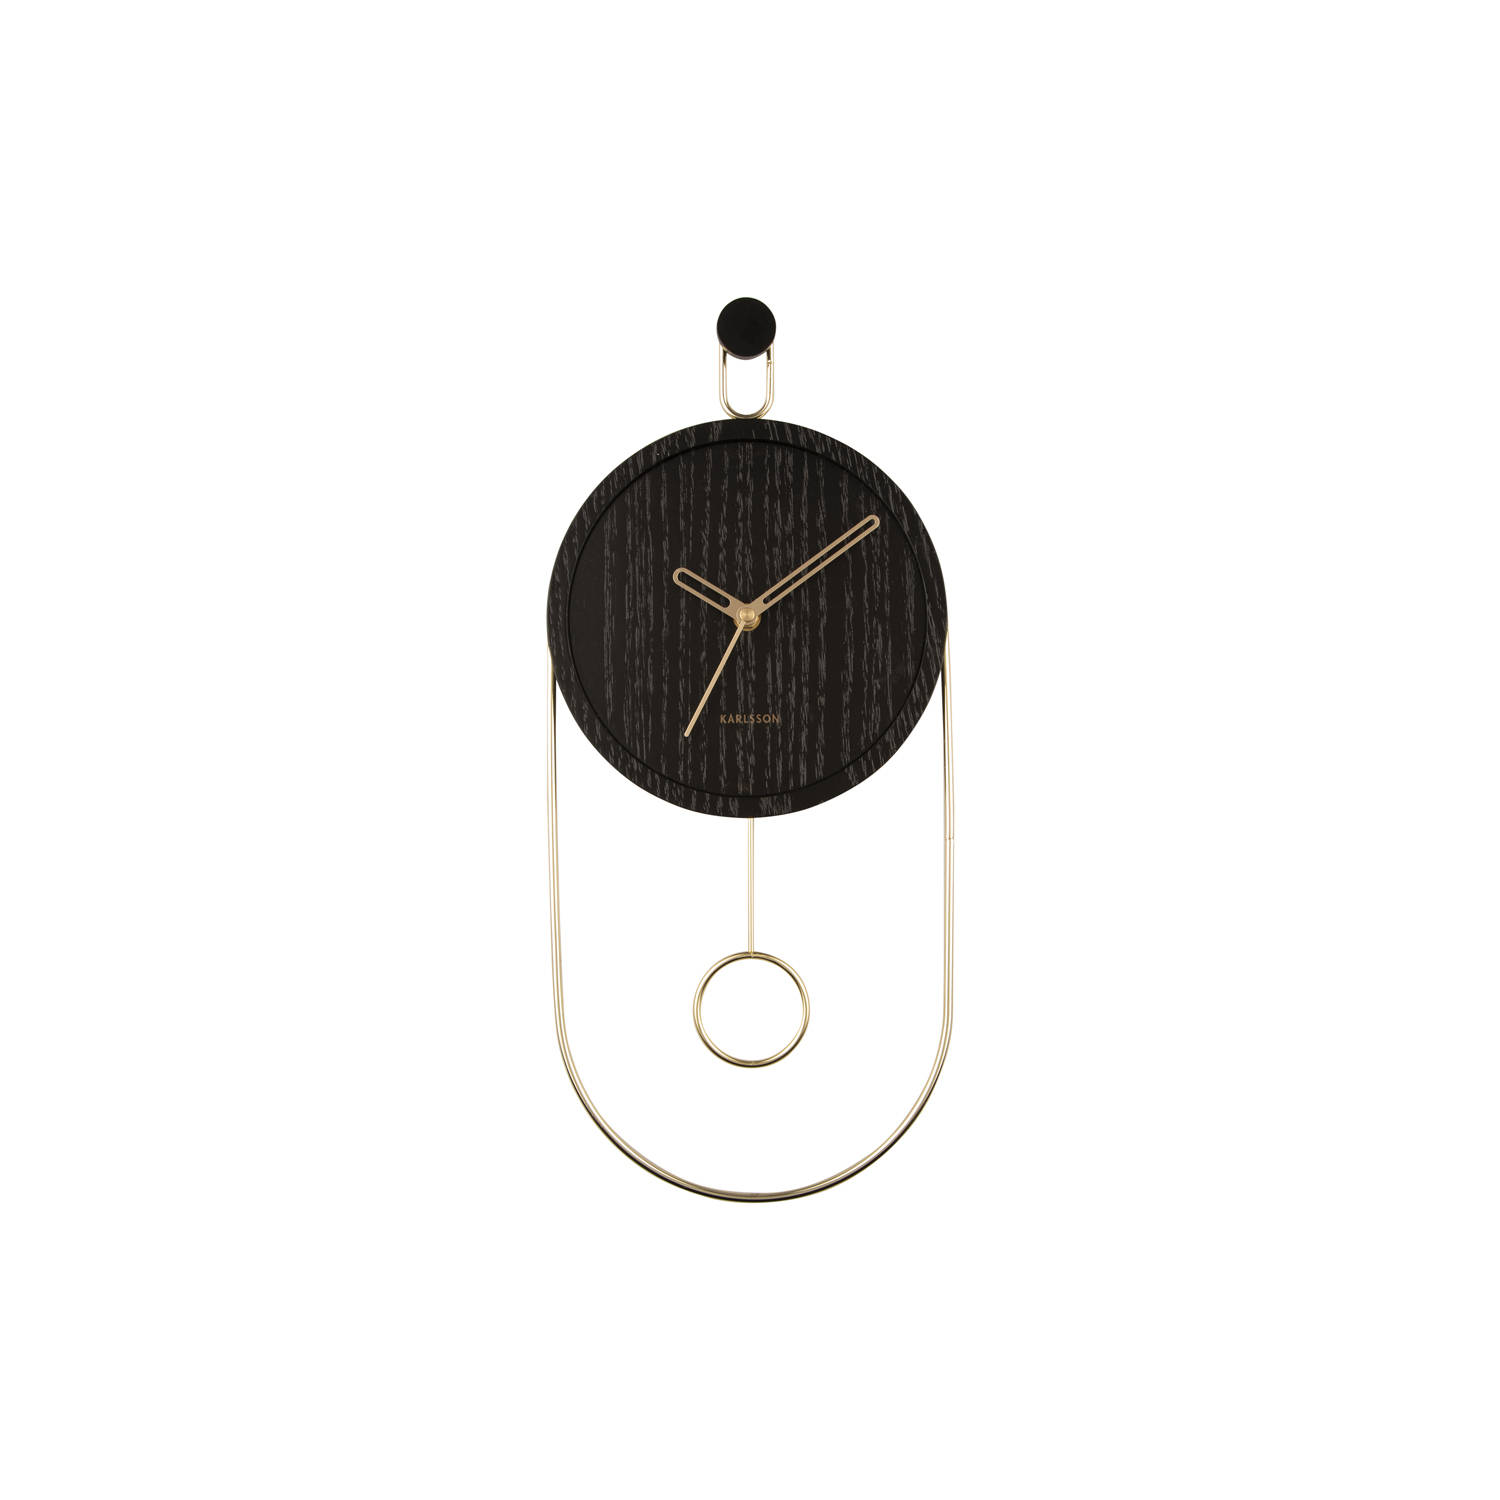 Karlsson Wall clock Swing pendulum wood veneer black